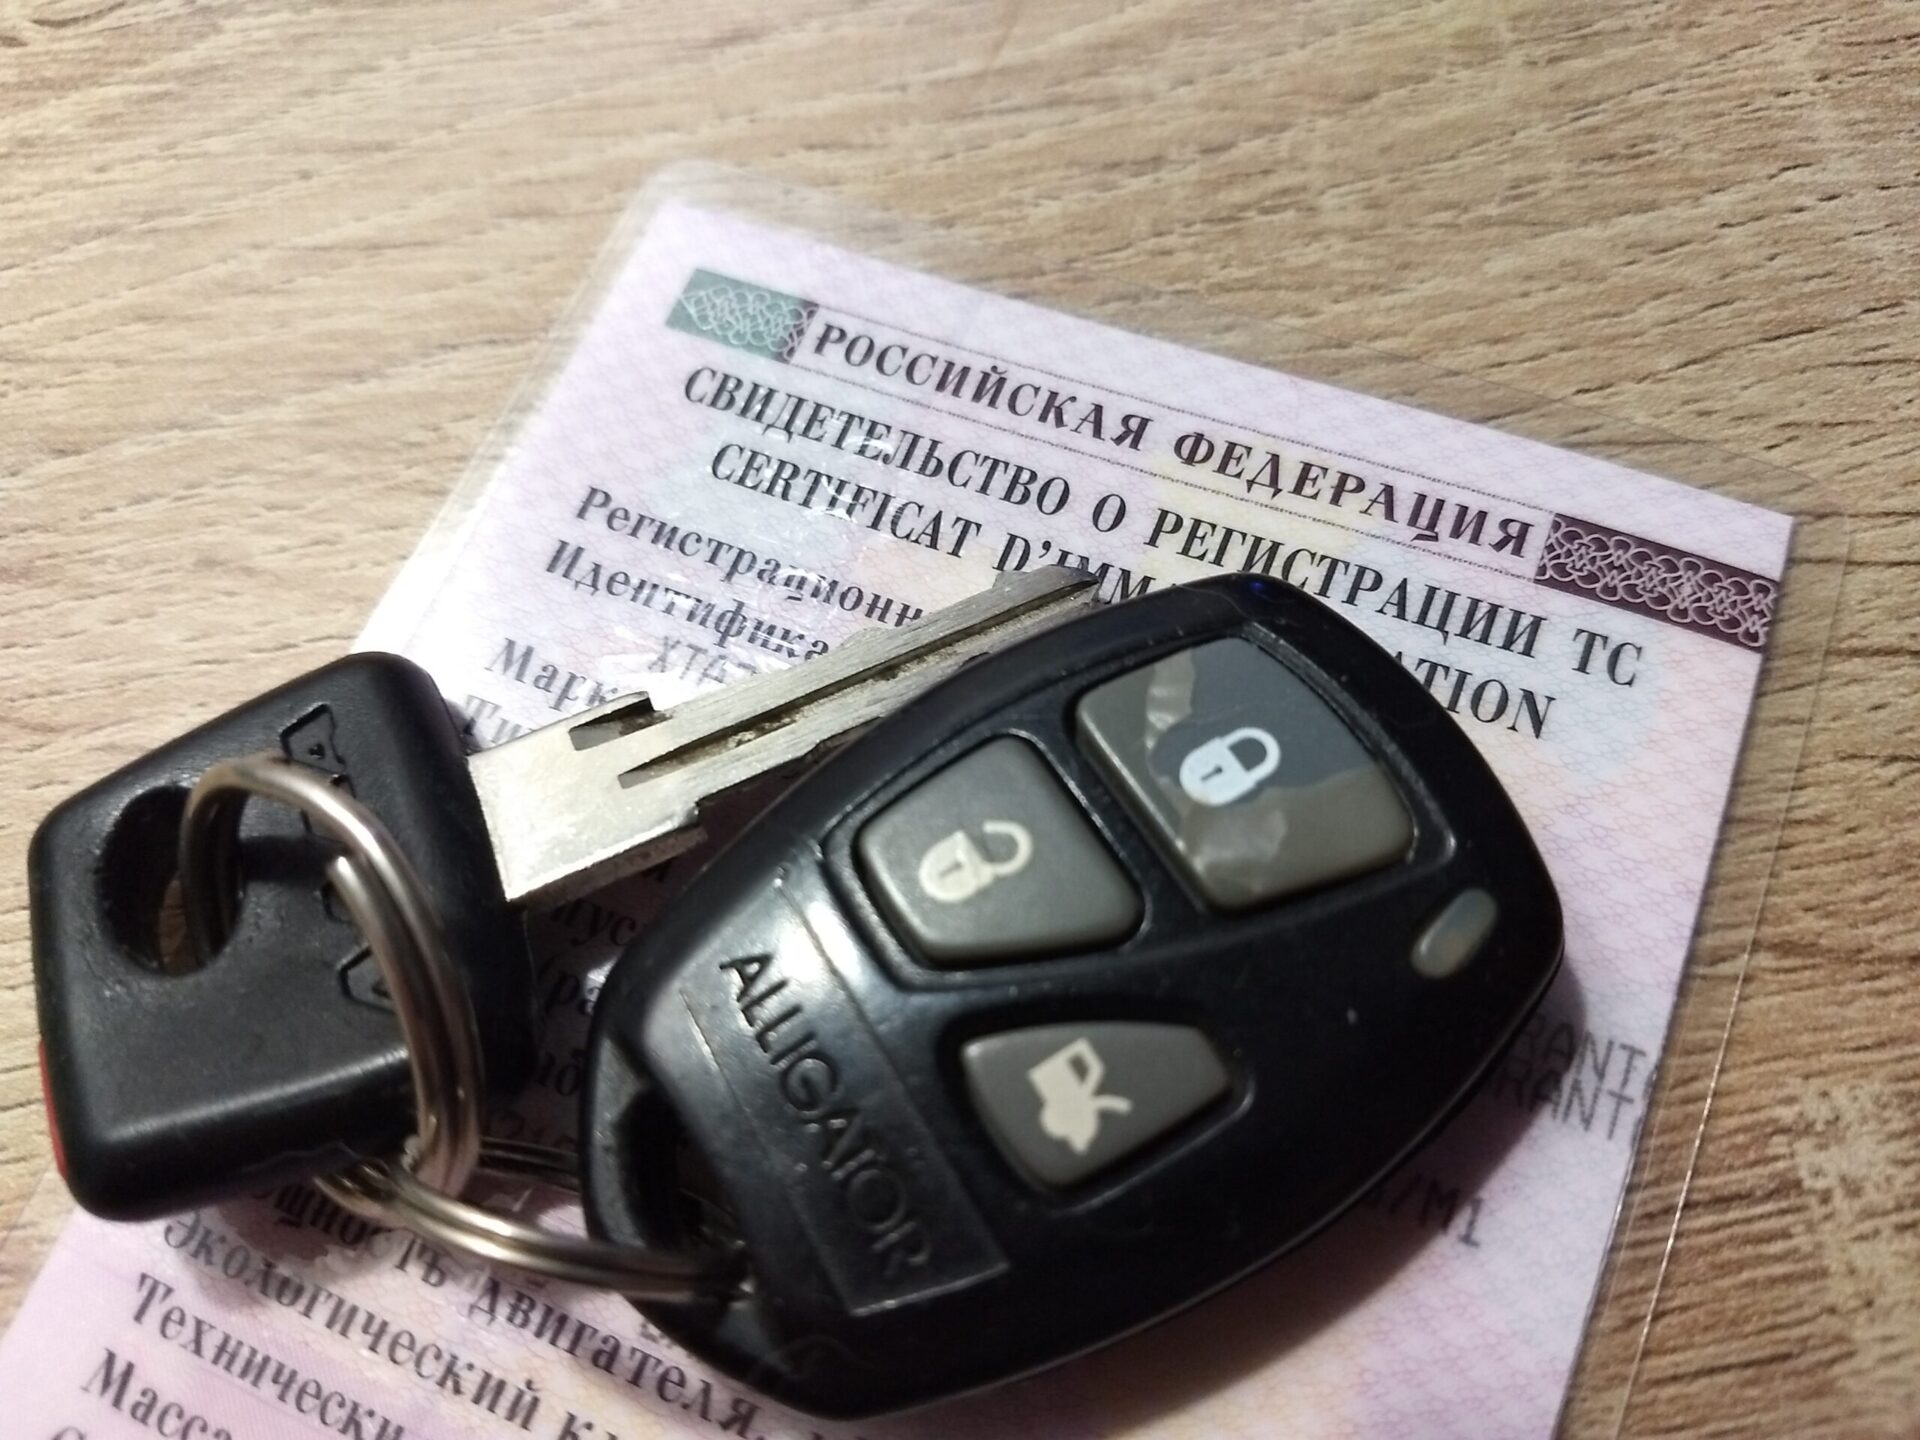 Водителям в РФ советуют снимать автомобиль с учета после продажи в 2022 году